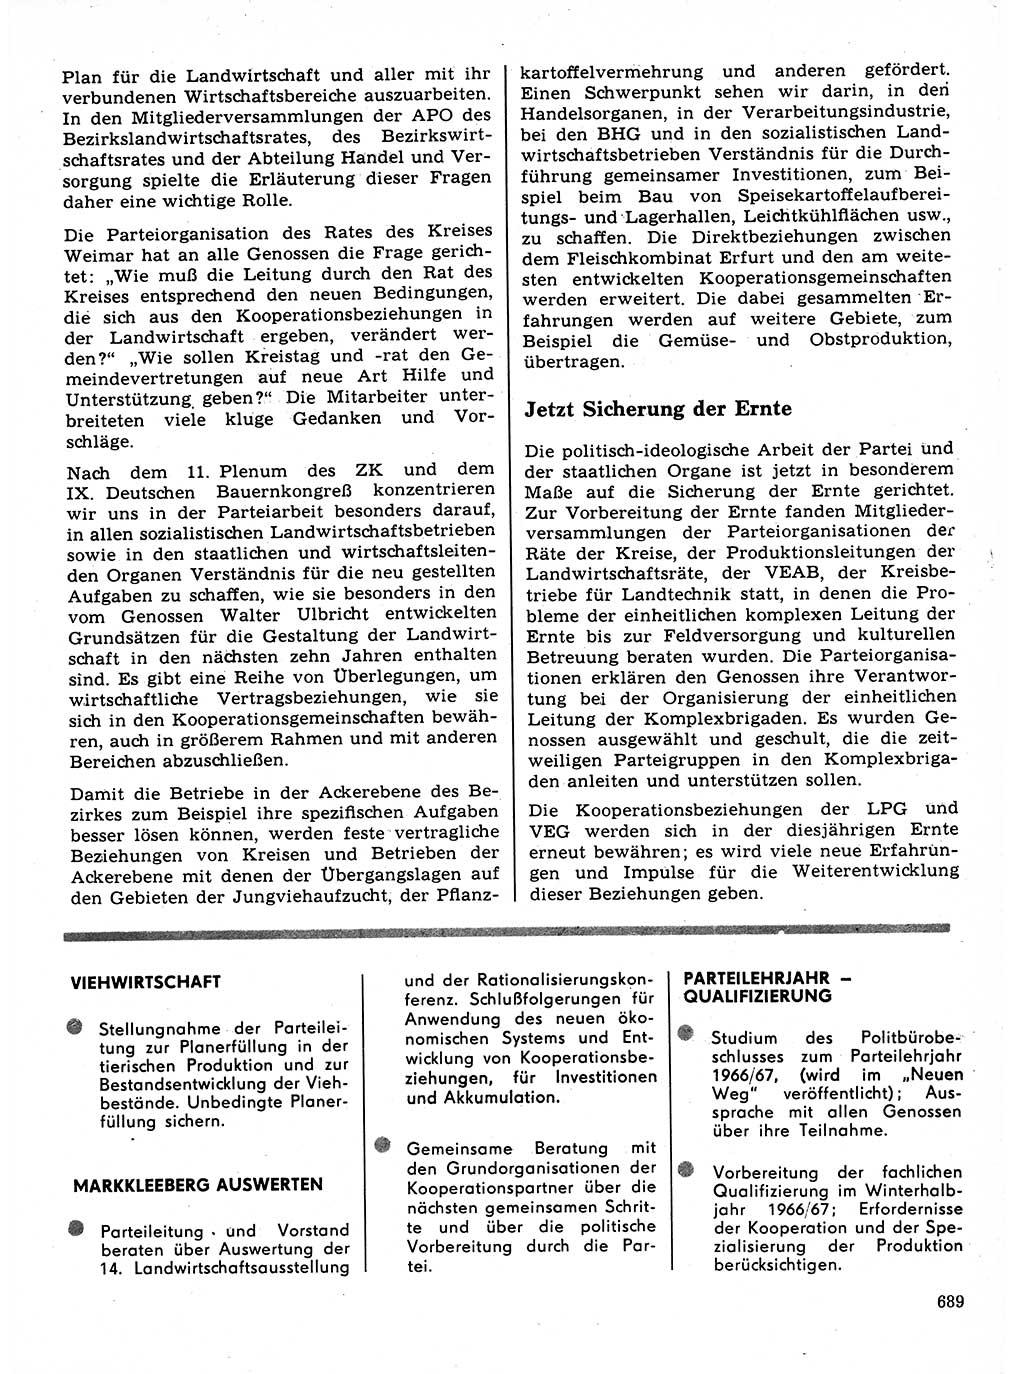 Neuer Weg (NW), Organ des Zentralkomitees (ZK) der SED (Sozialistische Einheitspartei Deutschlands) für Fragen des Parteilebens, 21. Jahrgang [Deutsche Demokratische Republik (DDR)] 1966, Seite 689 (NW ZK SED DDR 1966, S. 689)